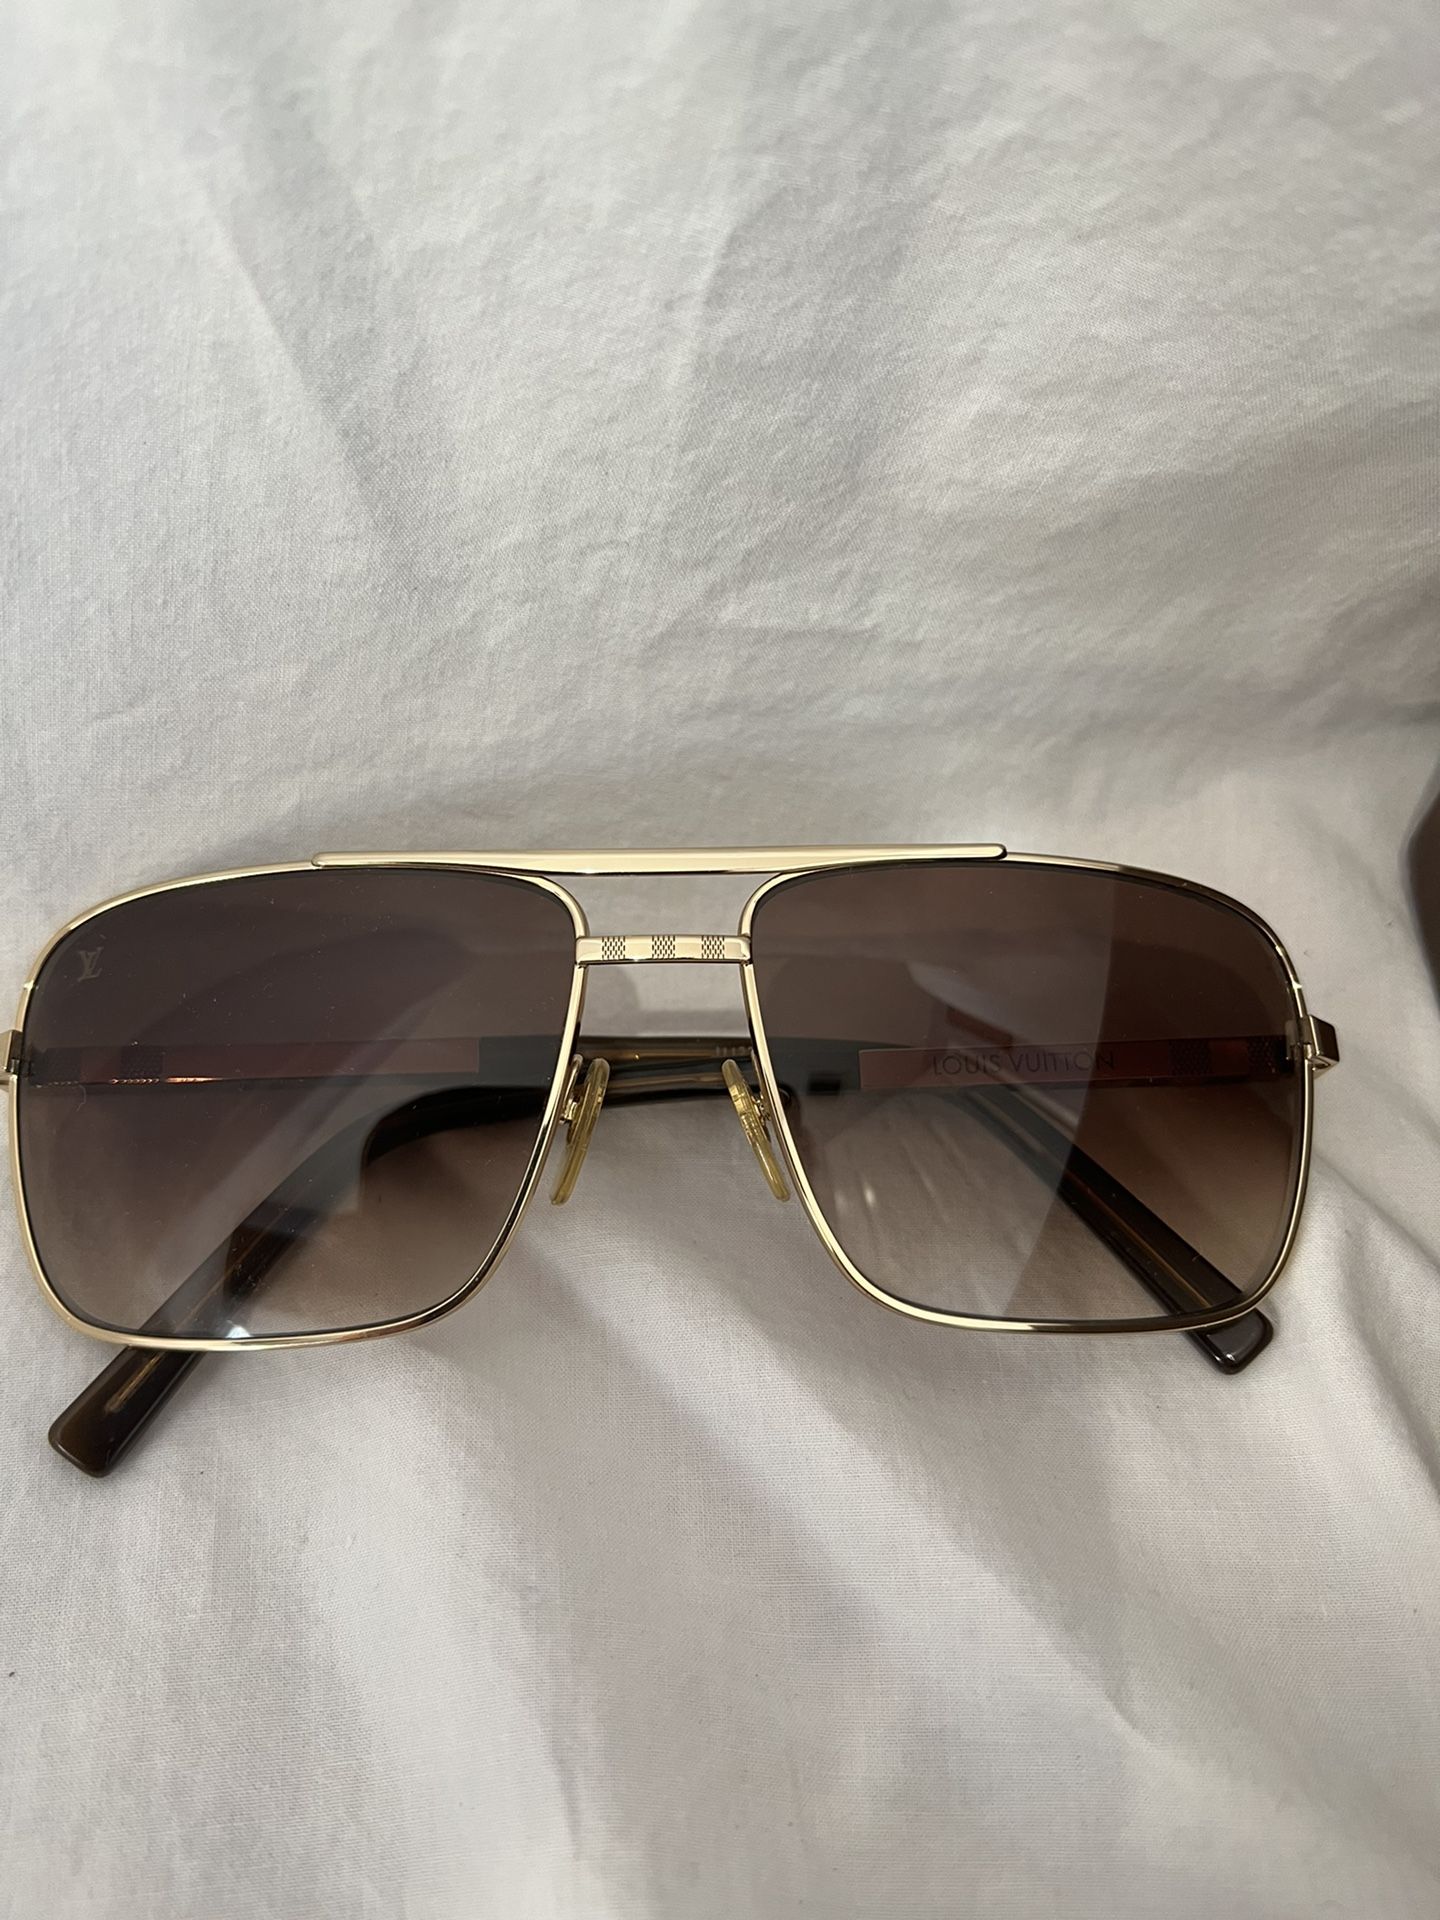 Louis Vuitton Attitude Sunglasses (Authentic)